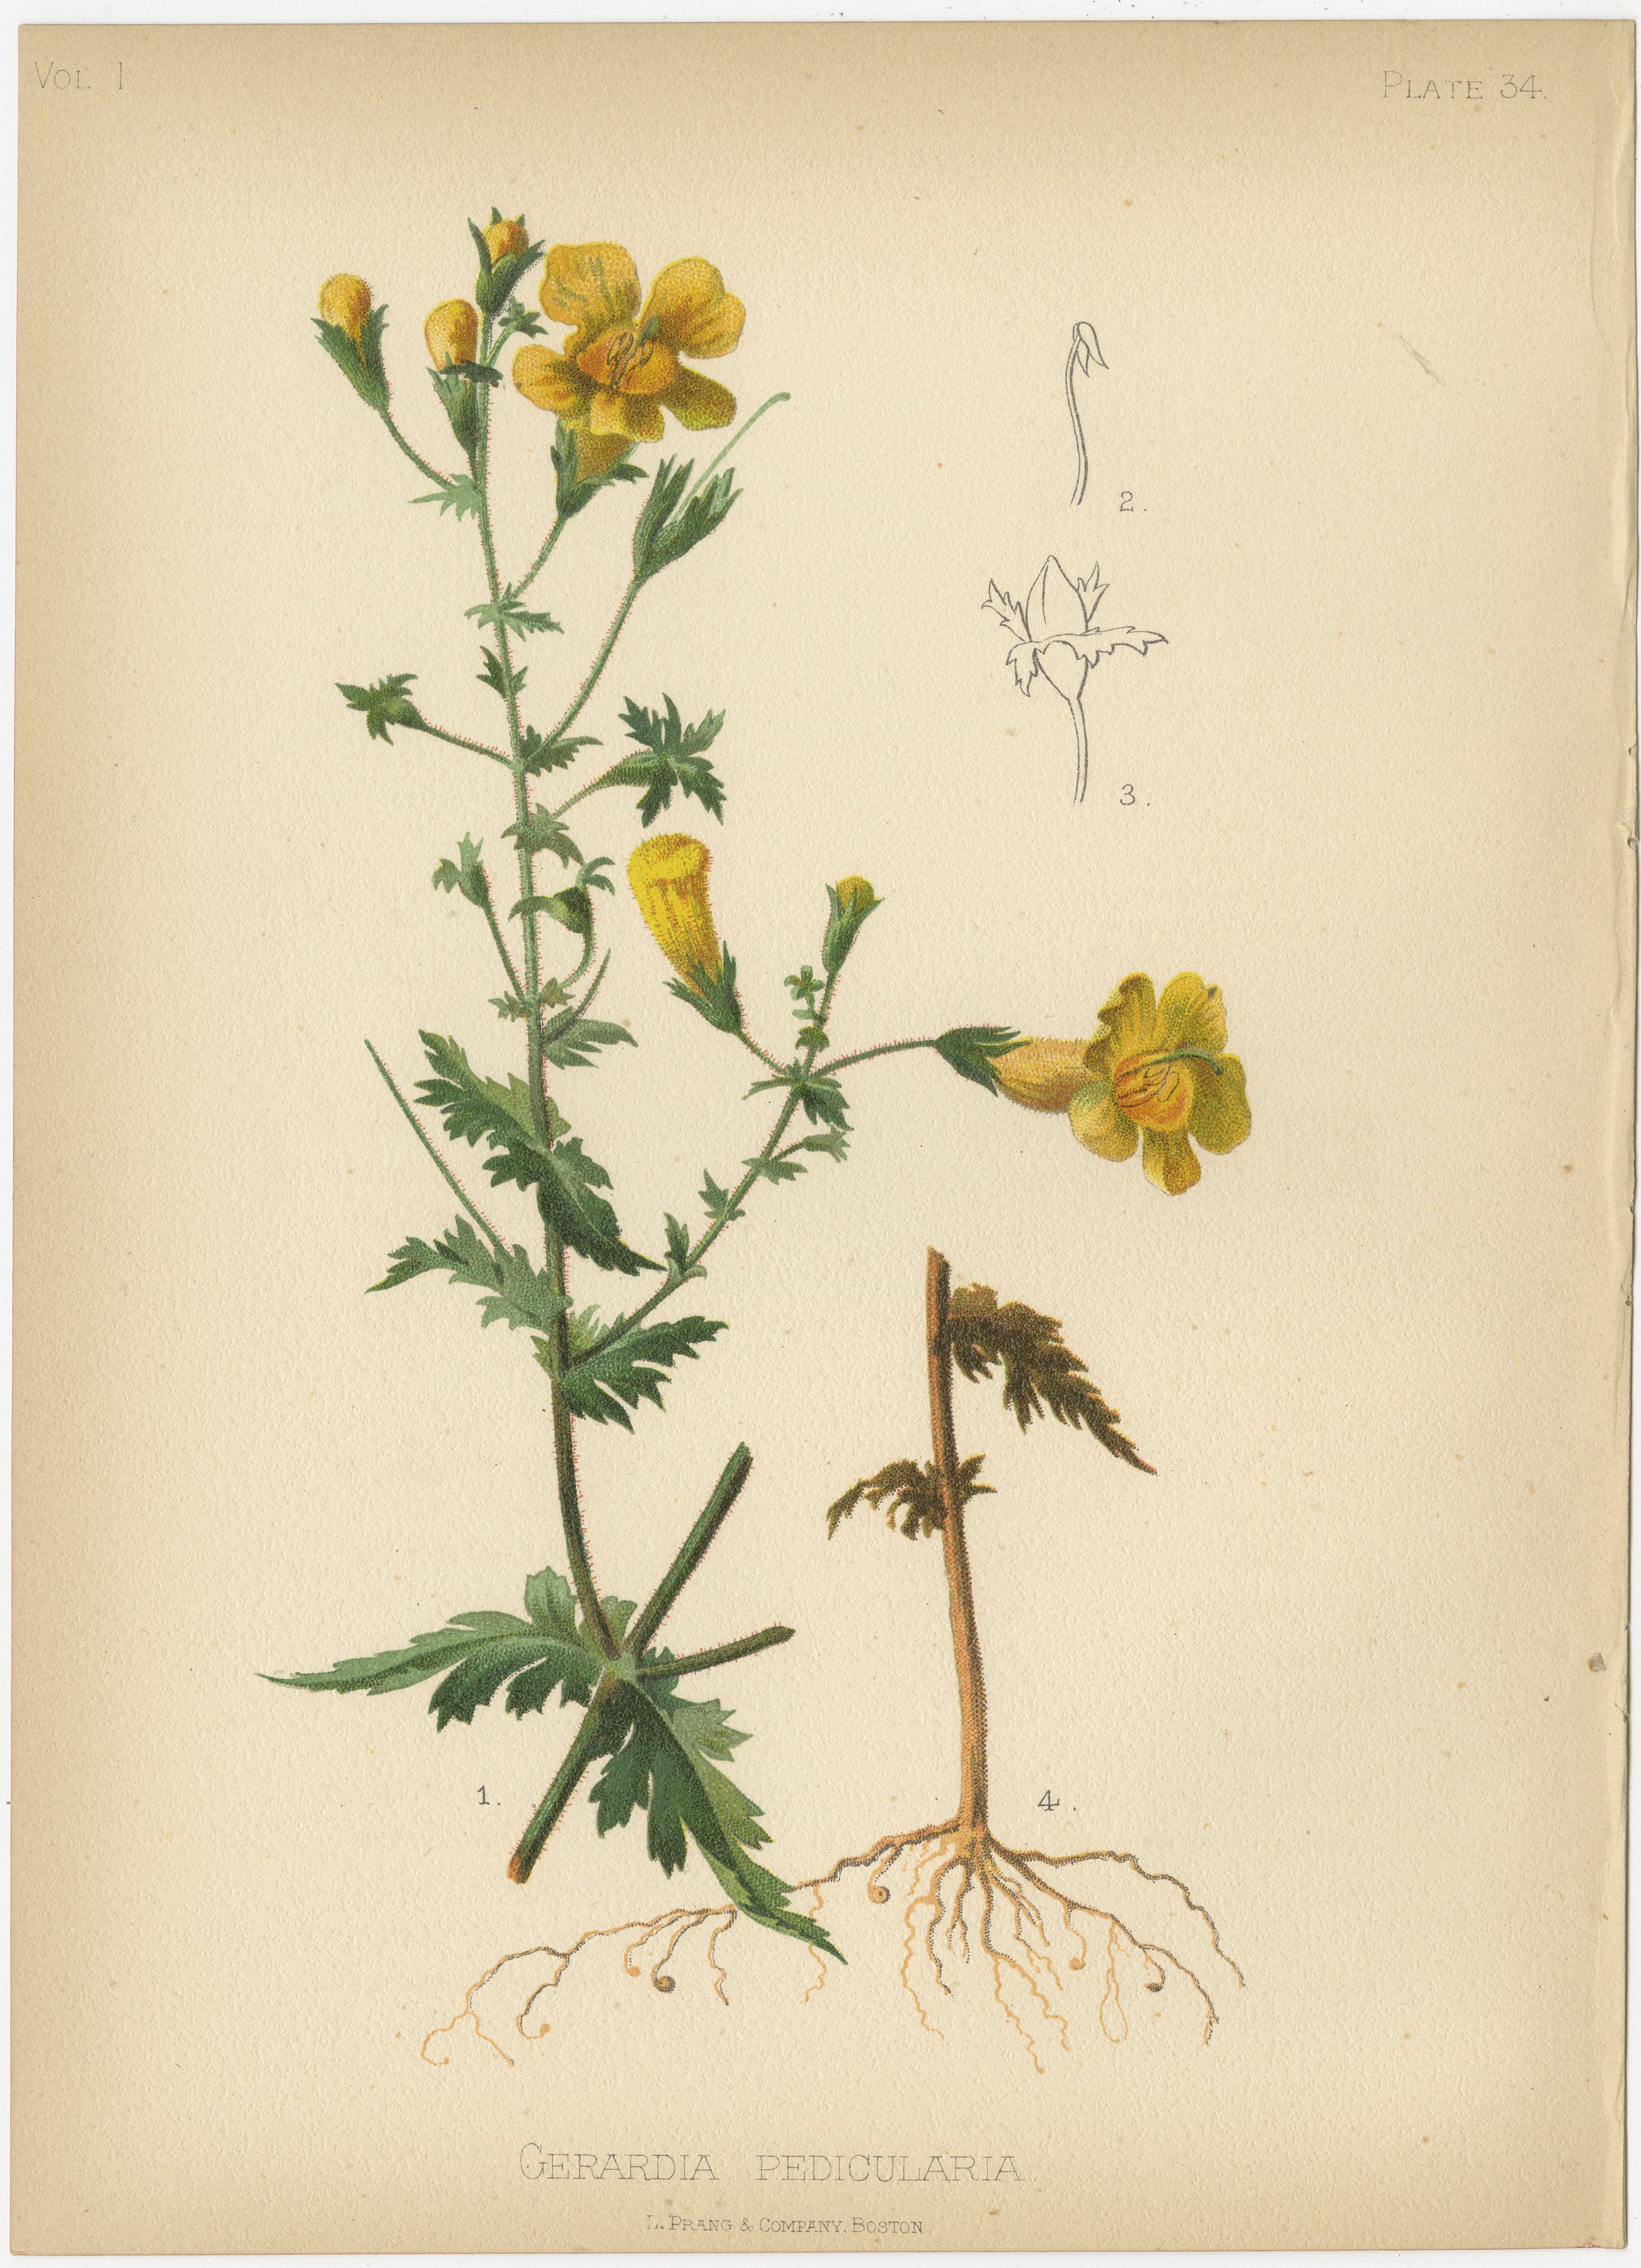 Das Bild zeigt eine Sammlung von zwei Chromolithographien, die verschiedene Pflanzenarten darstellen. Diese Illustrationen zeichnen sich durch ihre botanische Genauigkeit und Ästhetik aus, die typisch für naturkundliche Publikationen des späten 19.